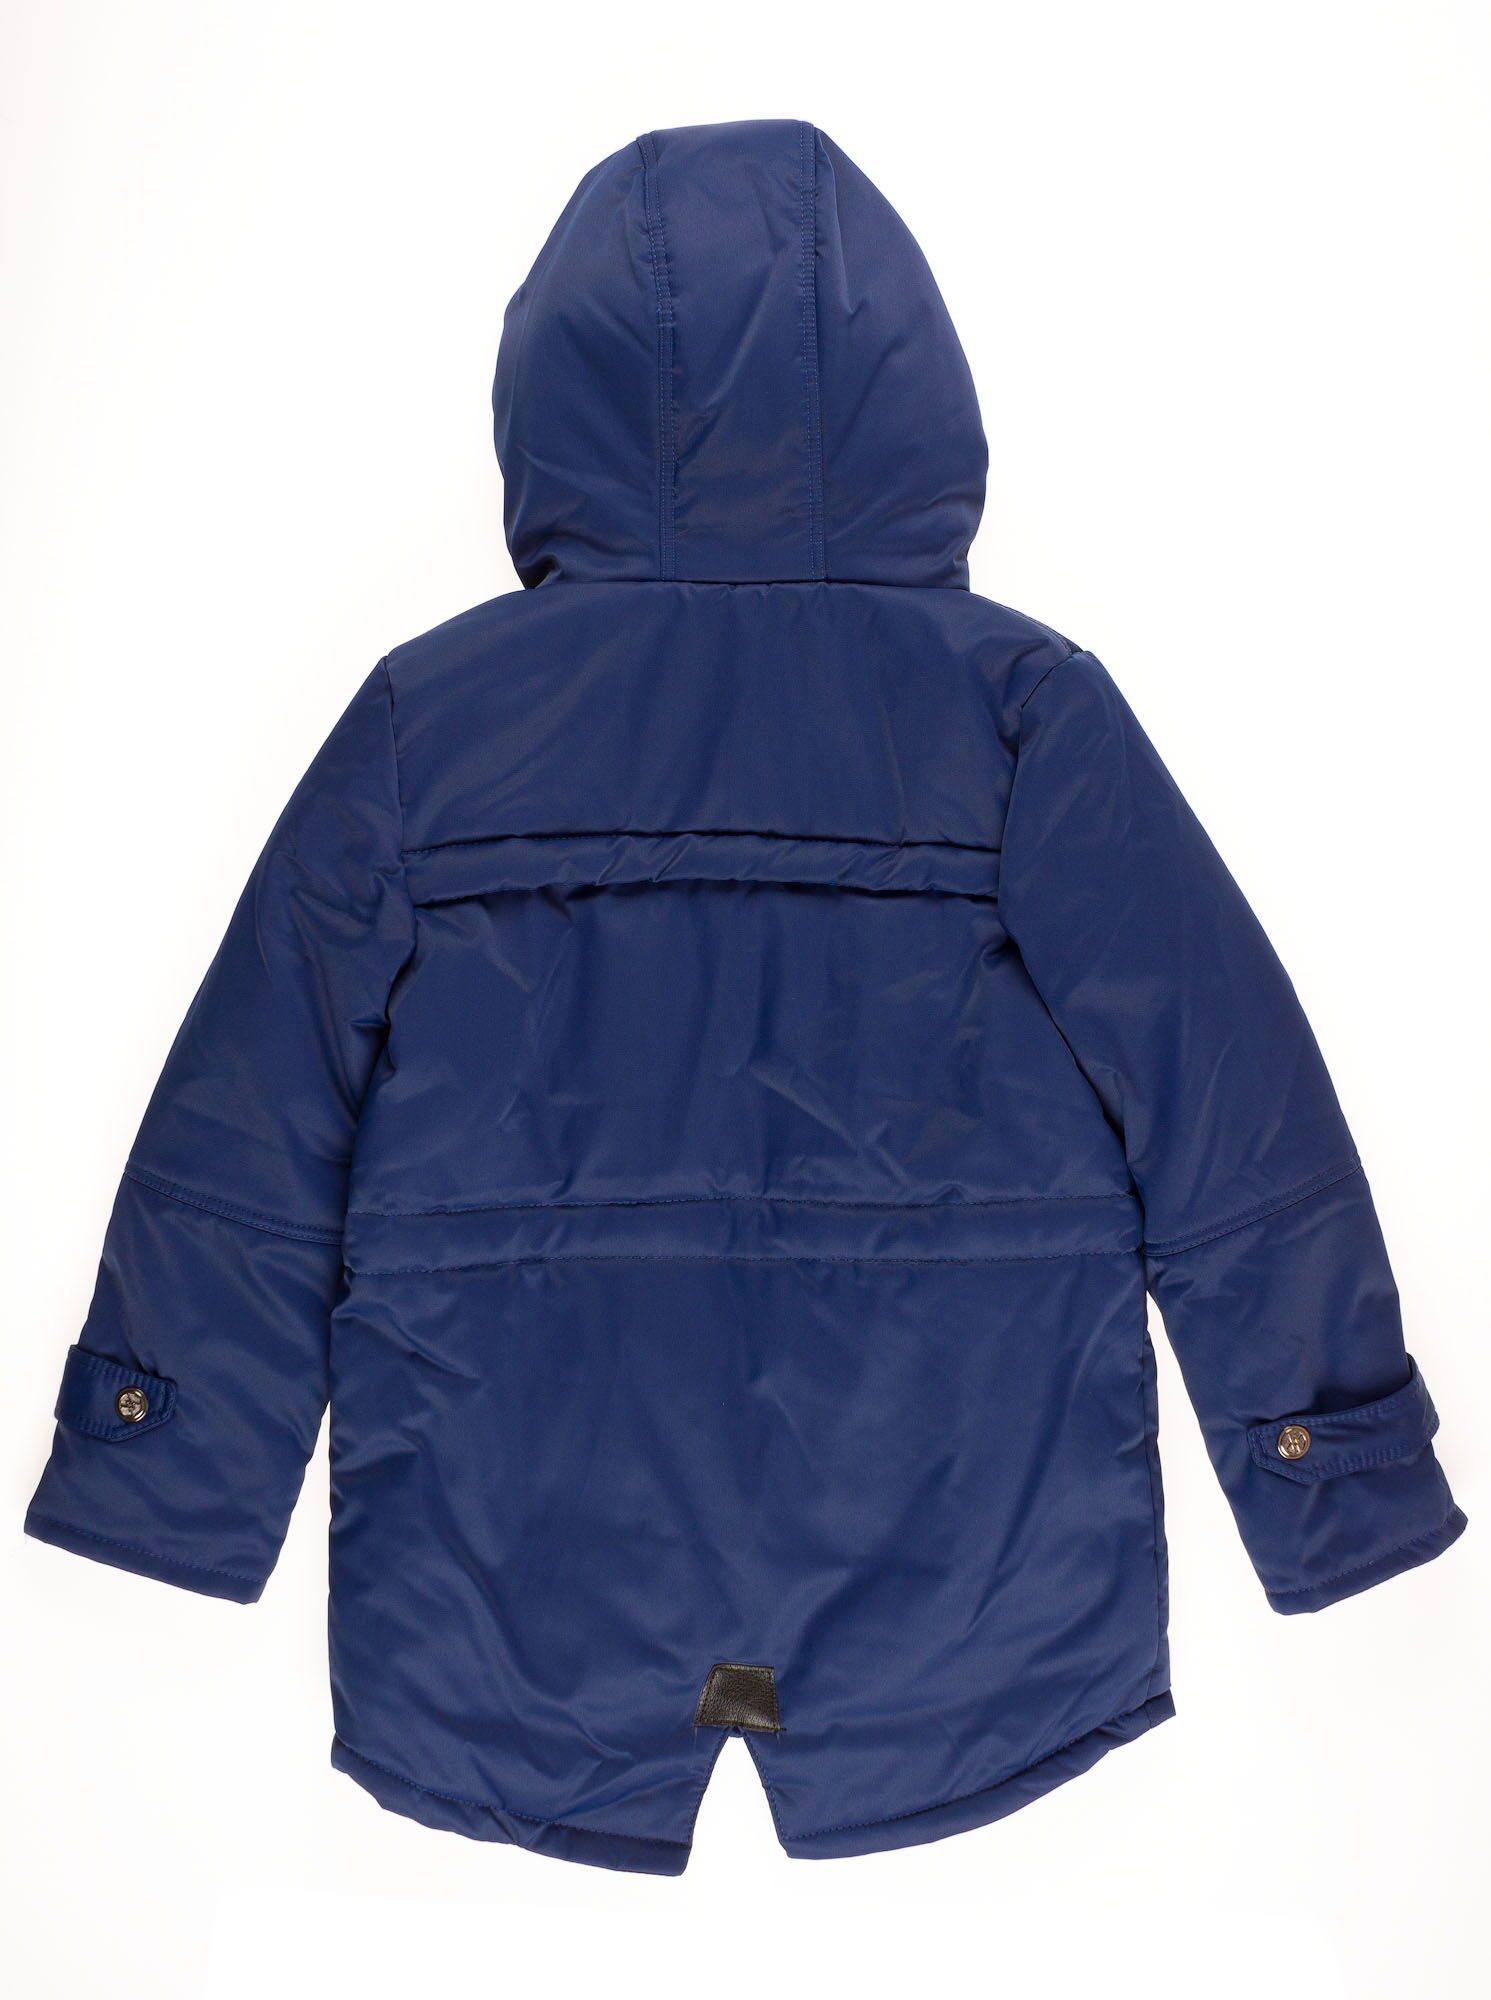 Куртка для мальчика ОДЯГАЙКО темно-синяя 22149 - размеры